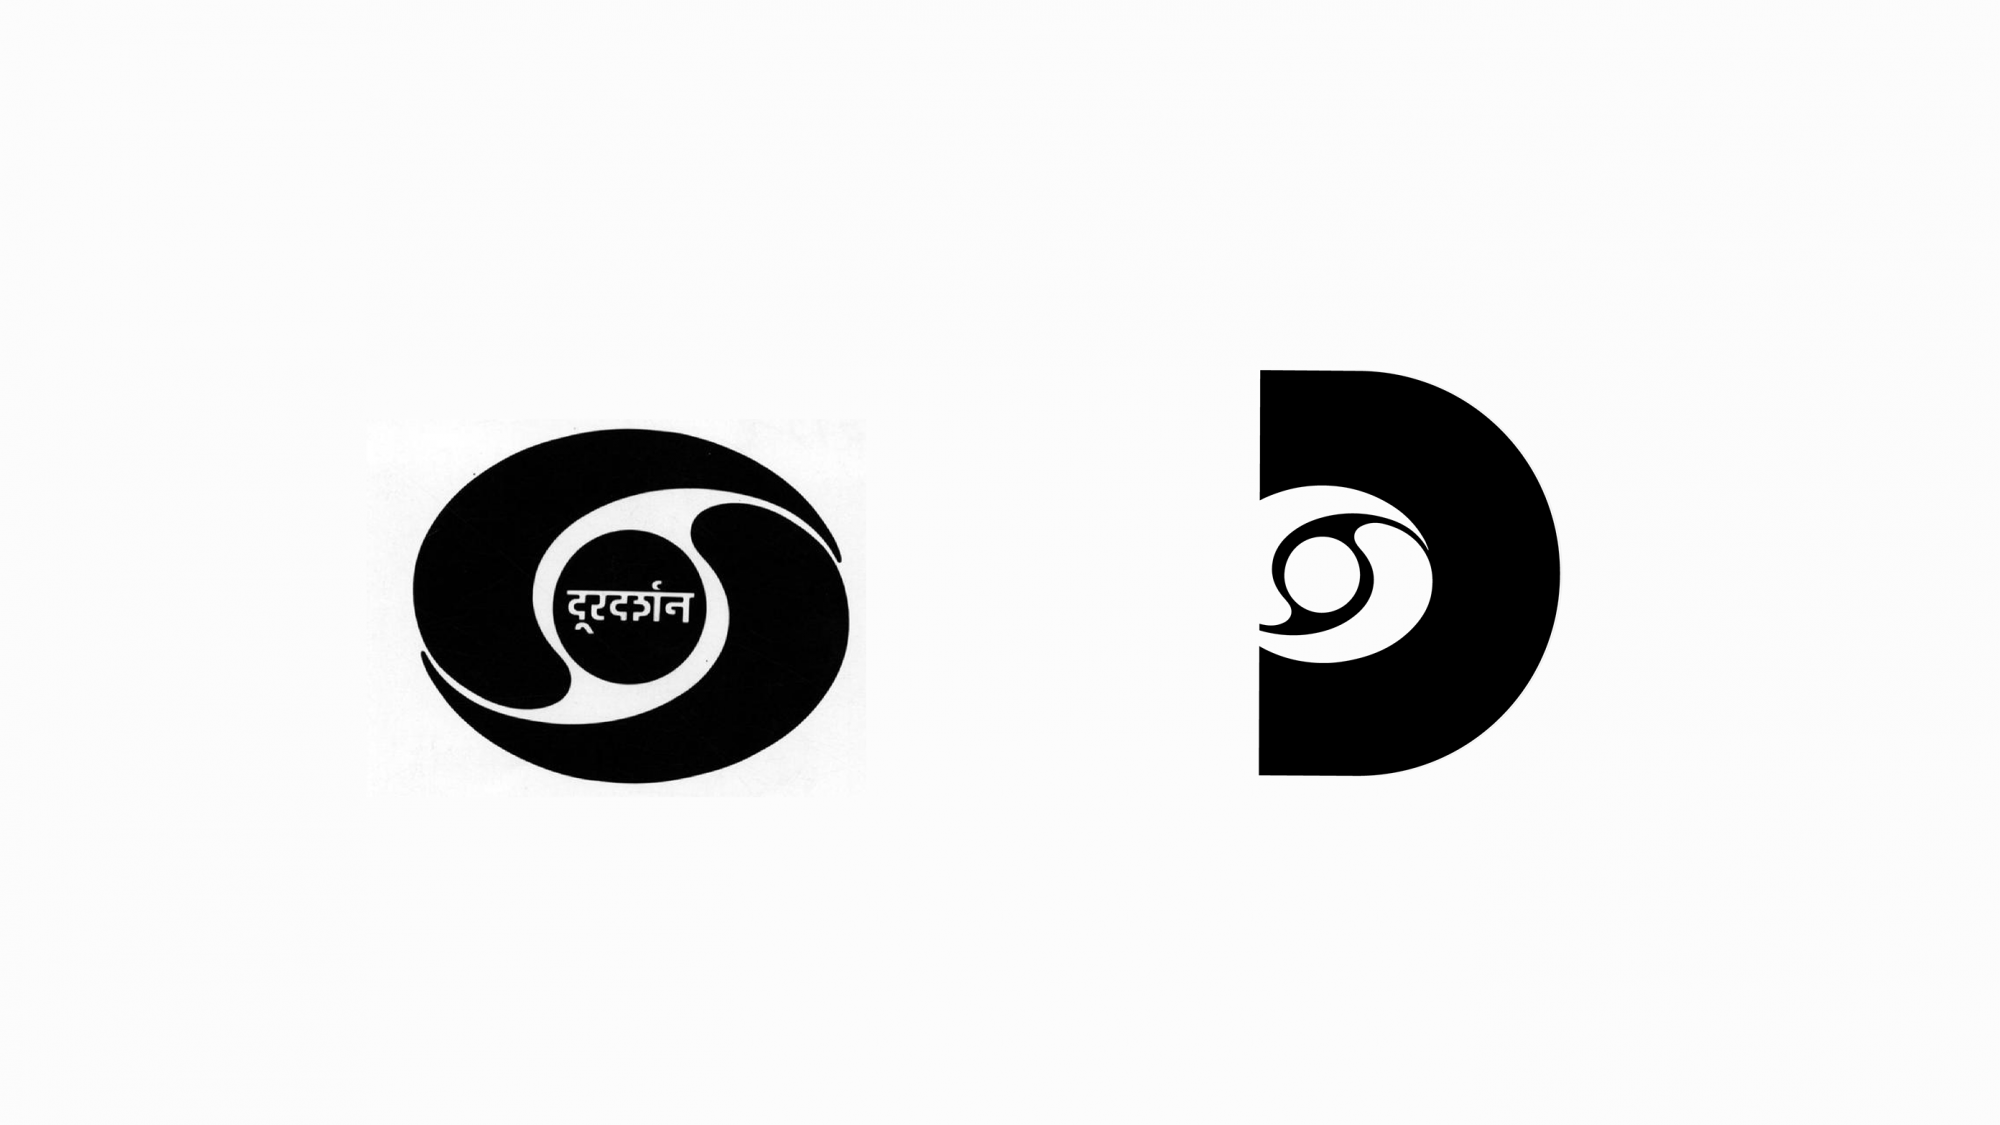 Doordarshan logo rebranding concept